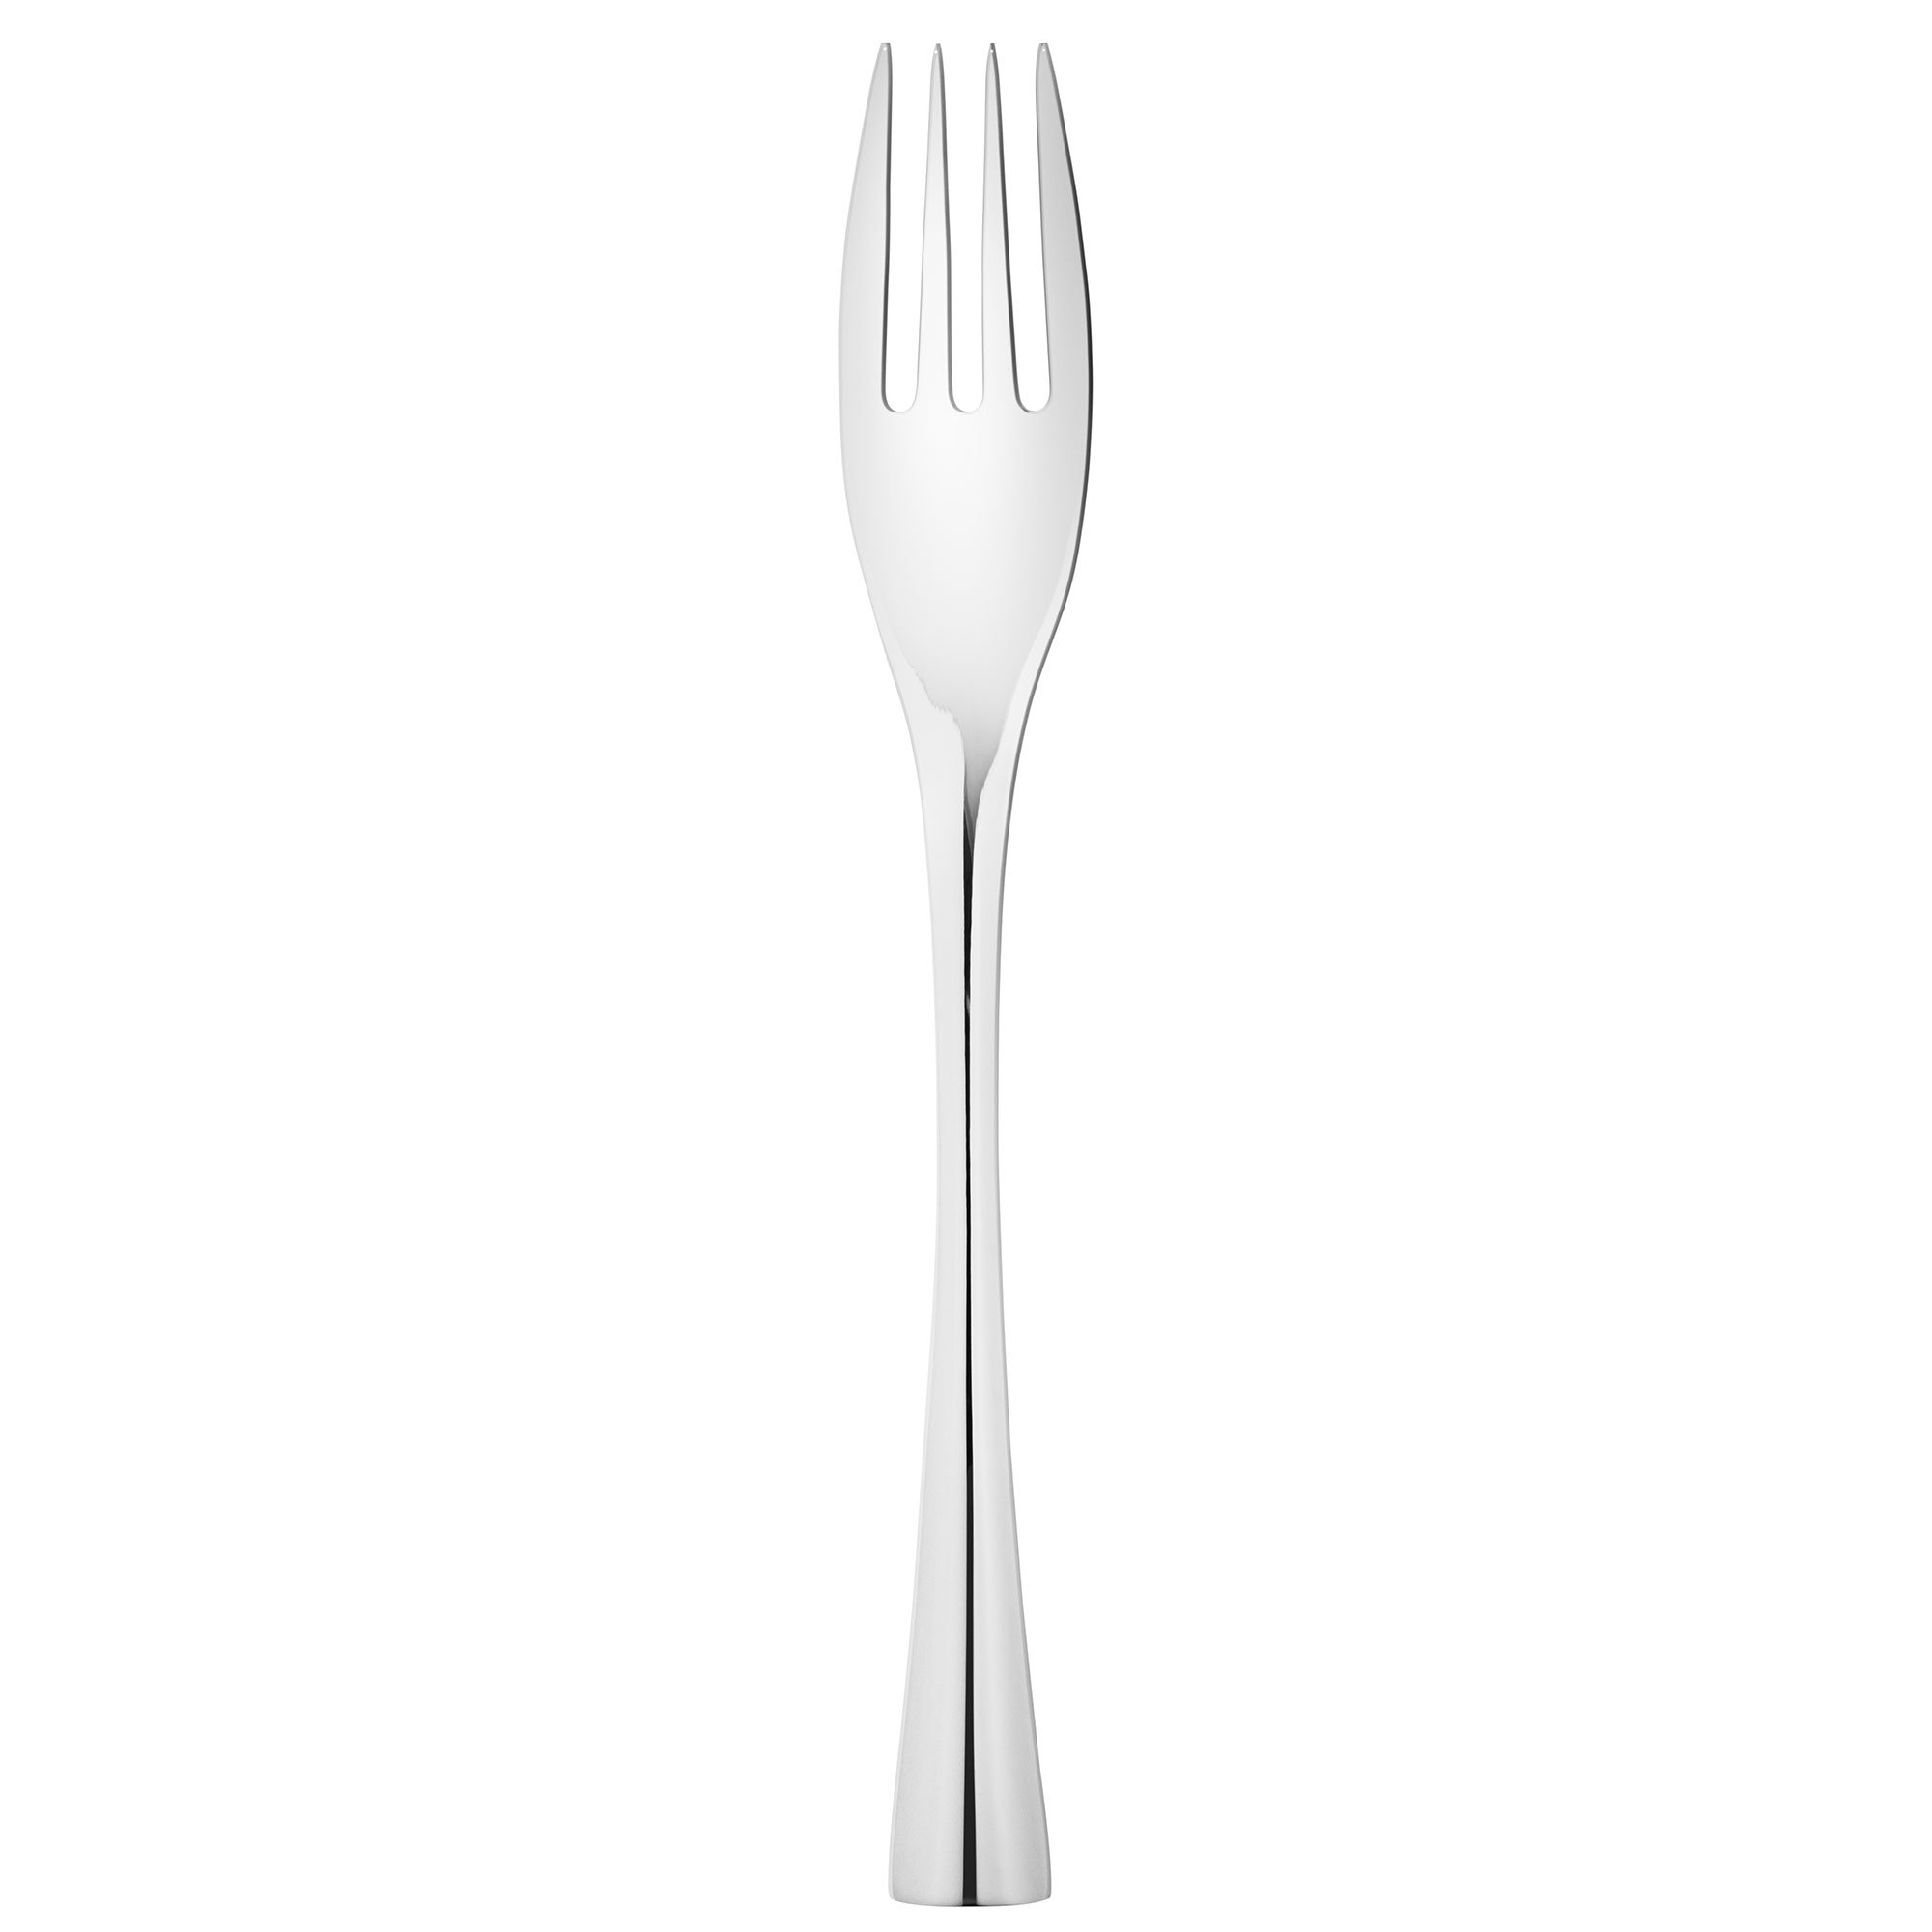 #1 på vores liste over gafler er Gaffel